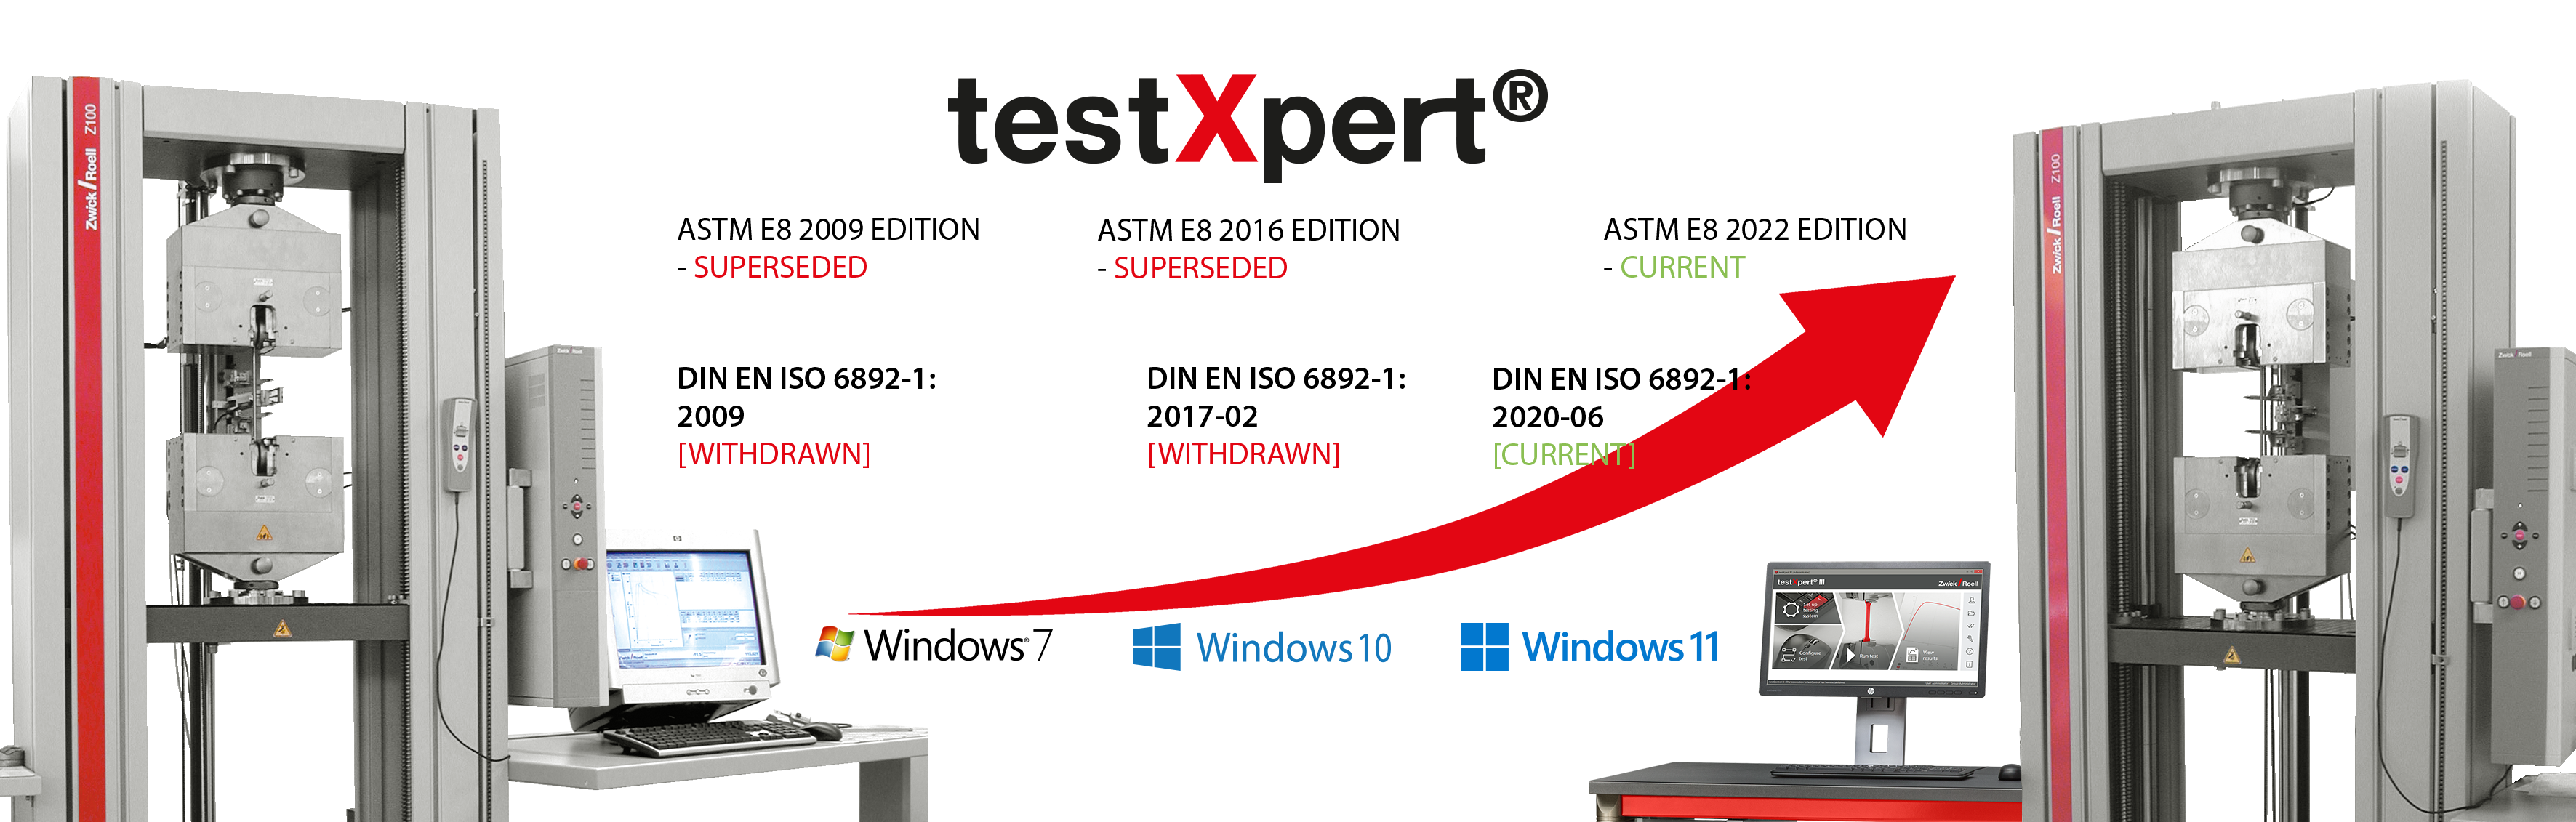 testXpert si evolve con te, sia che cambino gli standard o che venga introdotto un nuovo sistema operativo